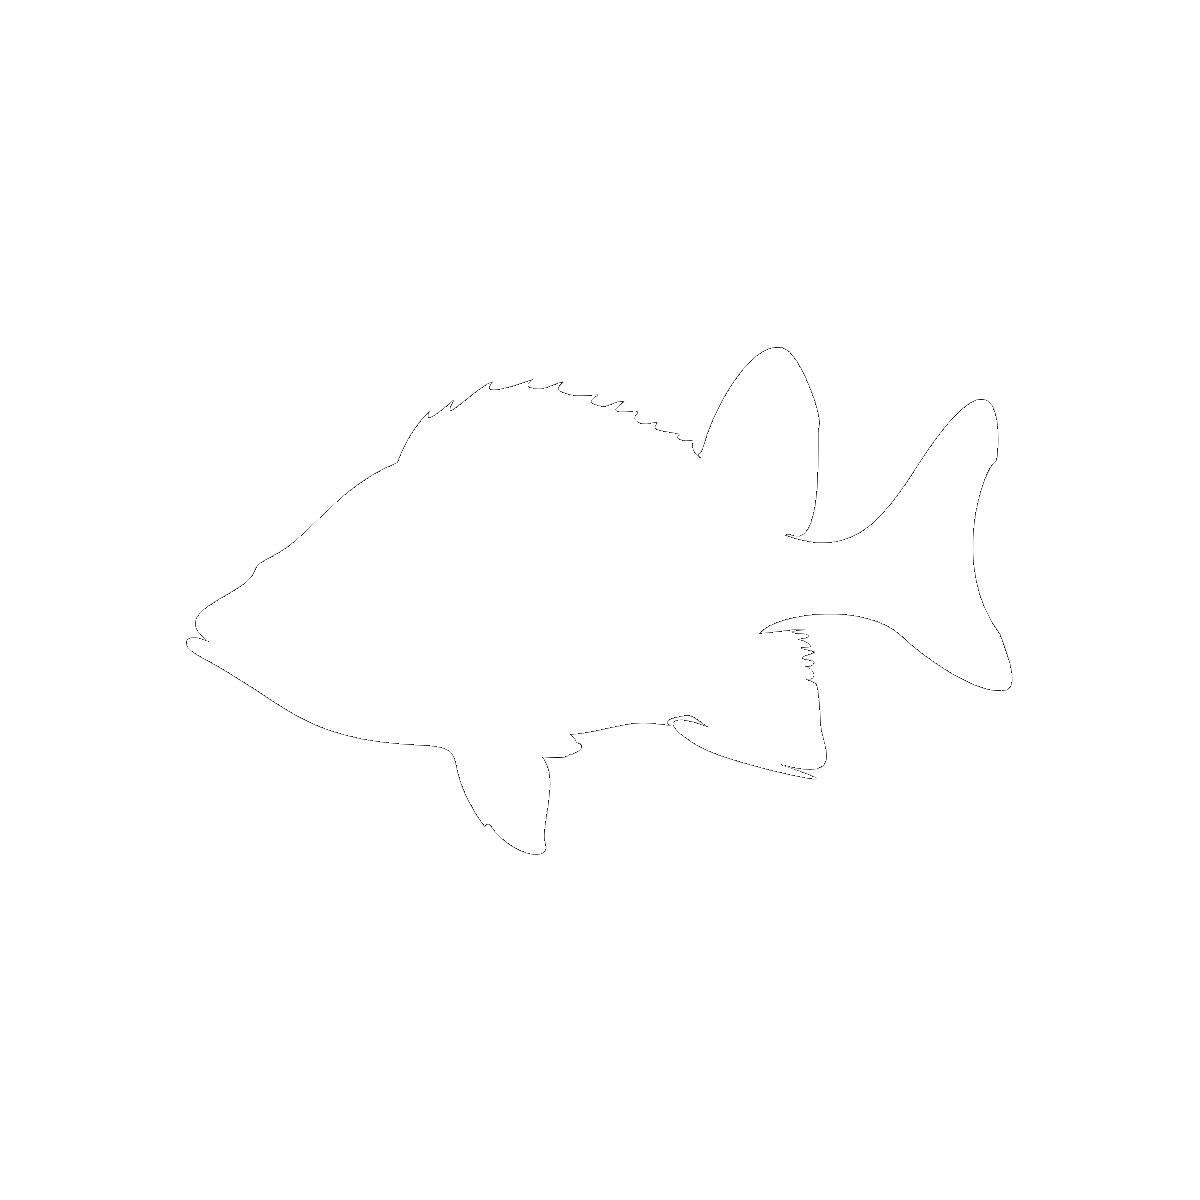 Symbol Fish, Water, and the Ocean